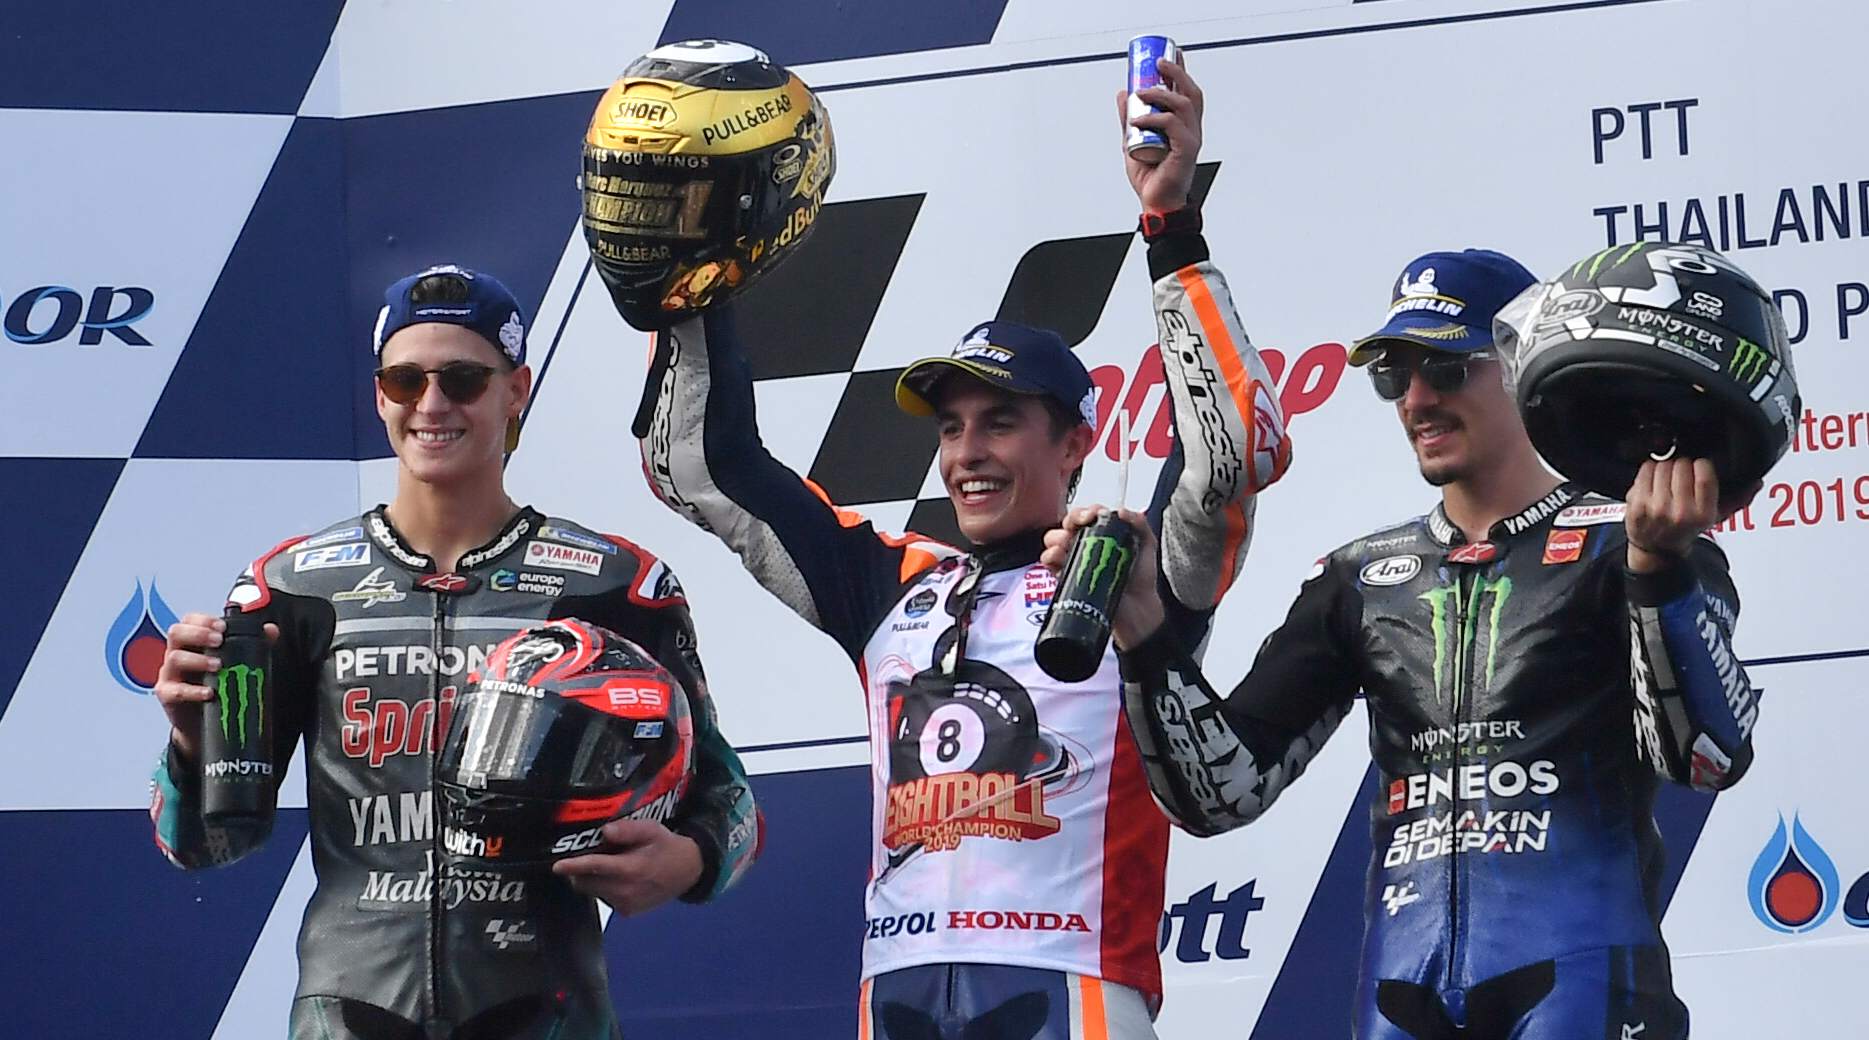 Marc Márquez gana su sexto mundial de MotoGP al imponerse en Tailandia